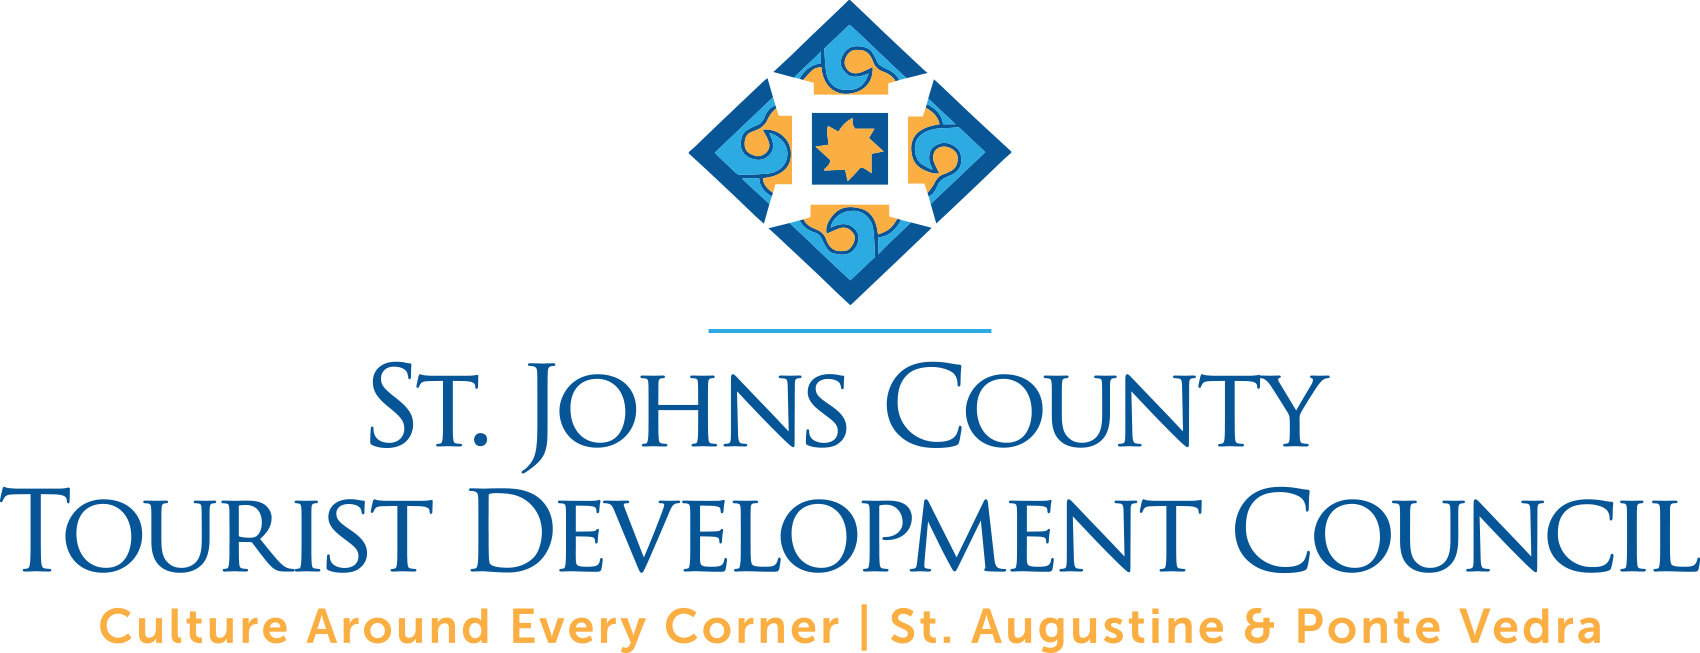 St. Johns County Tourist Development Council